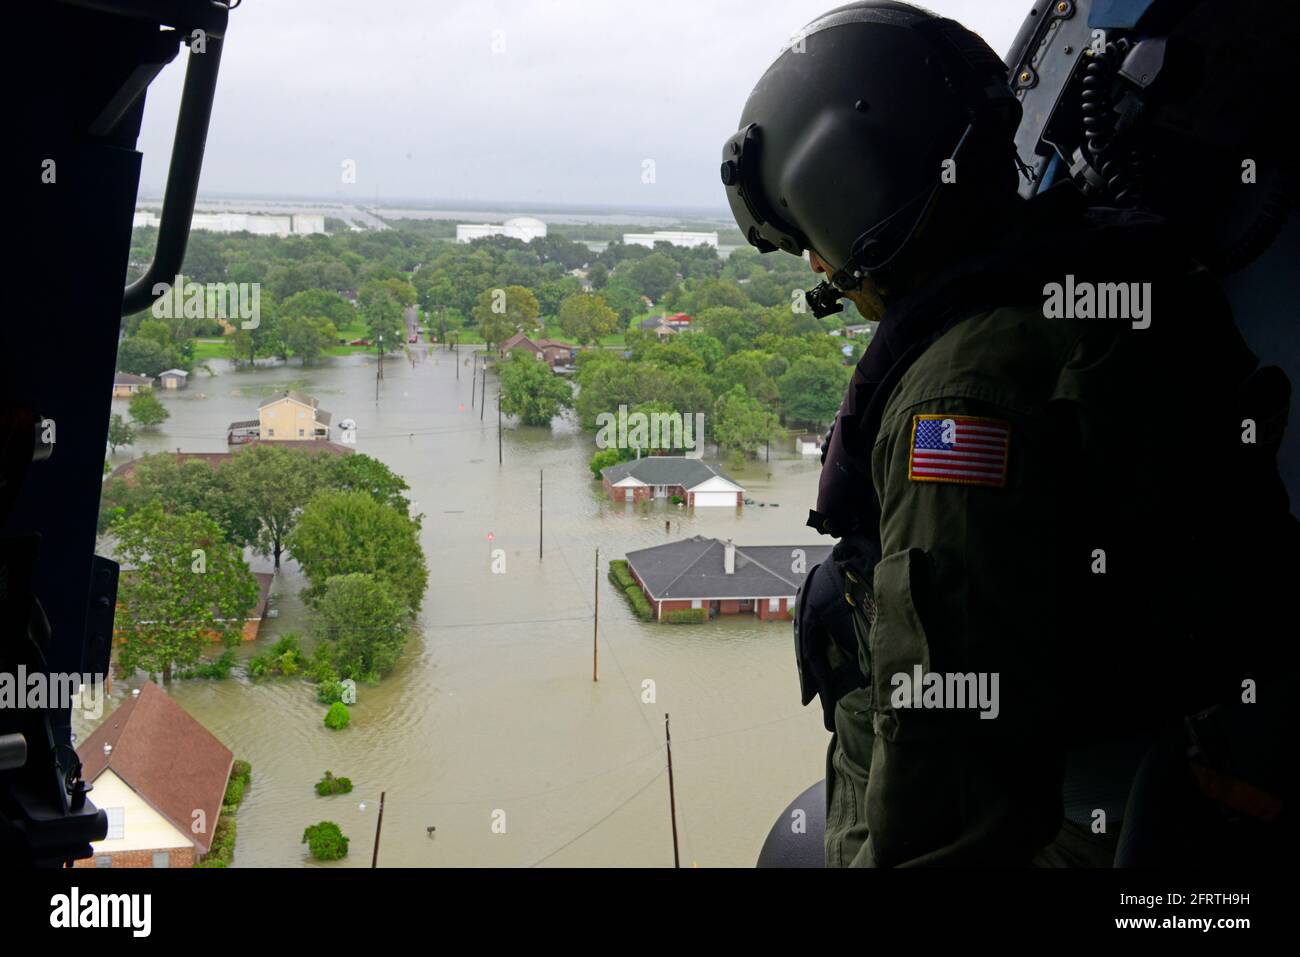 BEAUMONT, TX, EE.UU. - 30 de agosto de 2017 - La Guardia Costera de EE.UU. Responde a las solicitudes de búsqueda y rescate en respuesta al huracán Harvey en Beaumont, Texas, Foto de stock